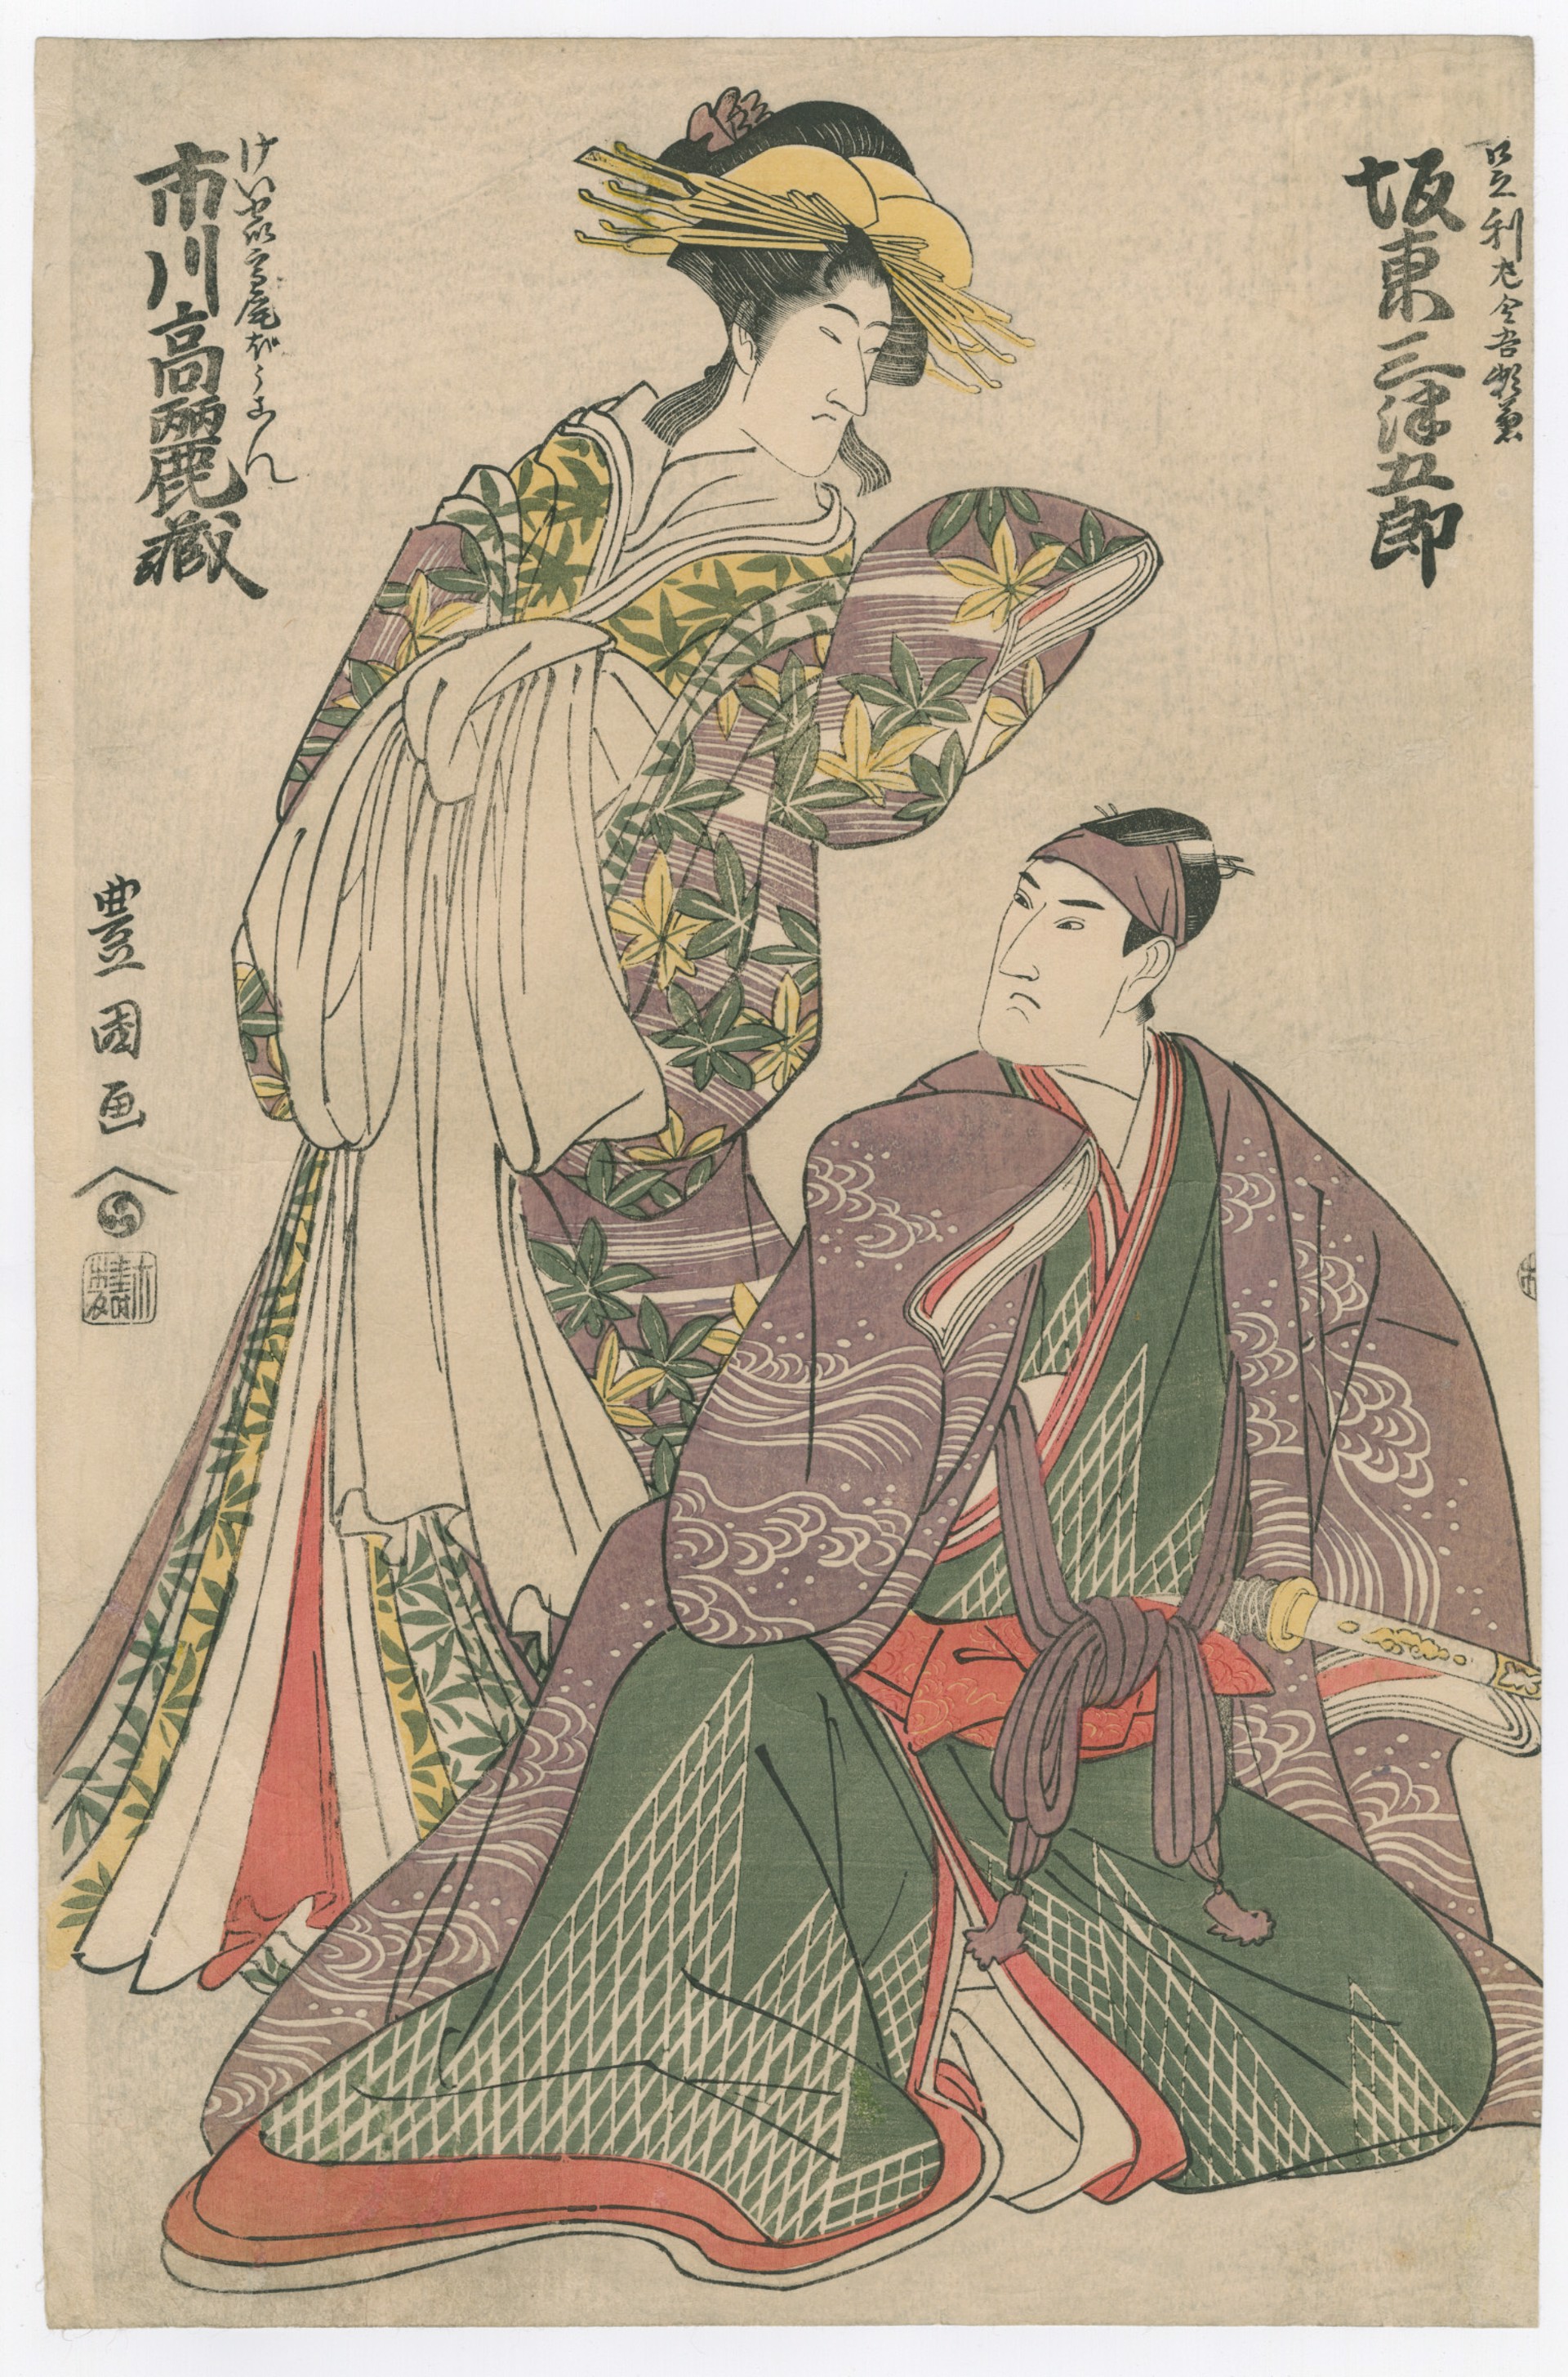 Ichikawa Komazo II (L) and Bando Hikosaburo III (R) Untitled Double Portrait actor Series by Toyokuni I